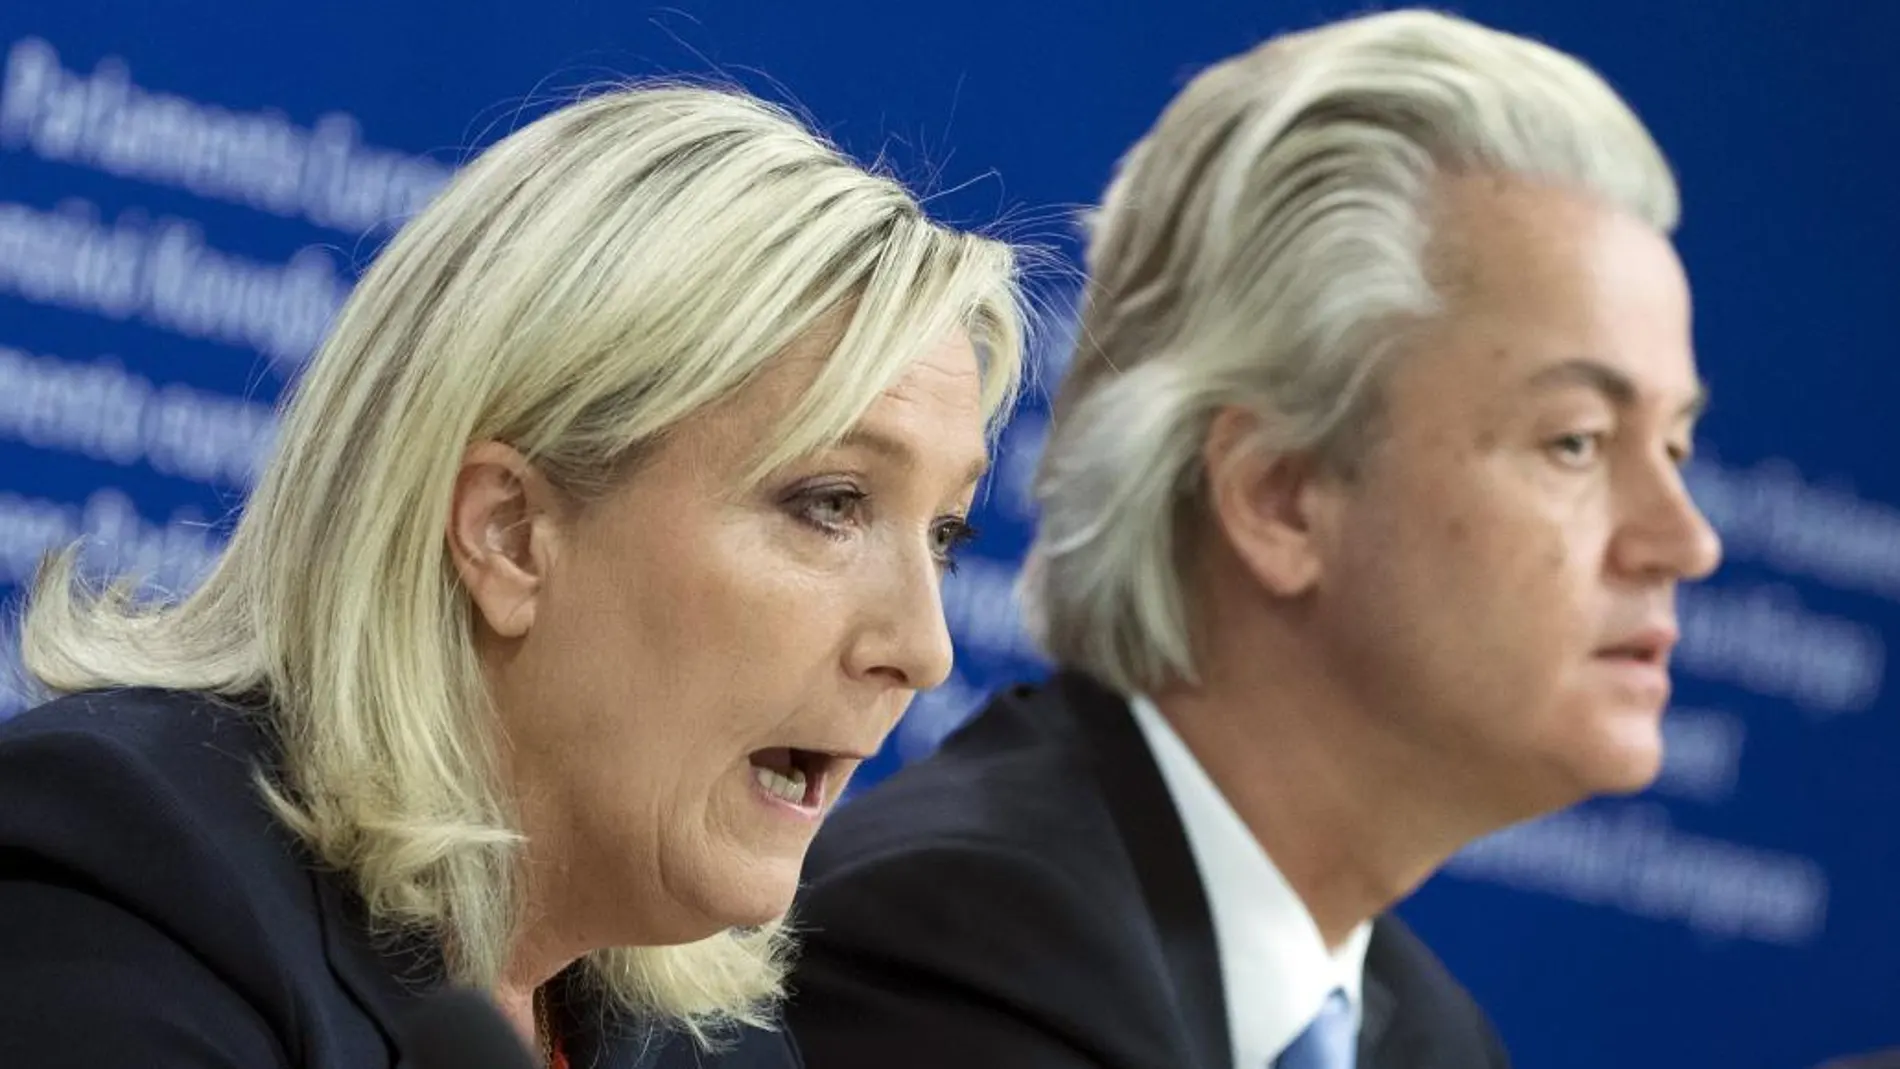 La presidenta del Frente Nacional, Marine Le Pen, junto al líder ultra holandés, Geert Wilders